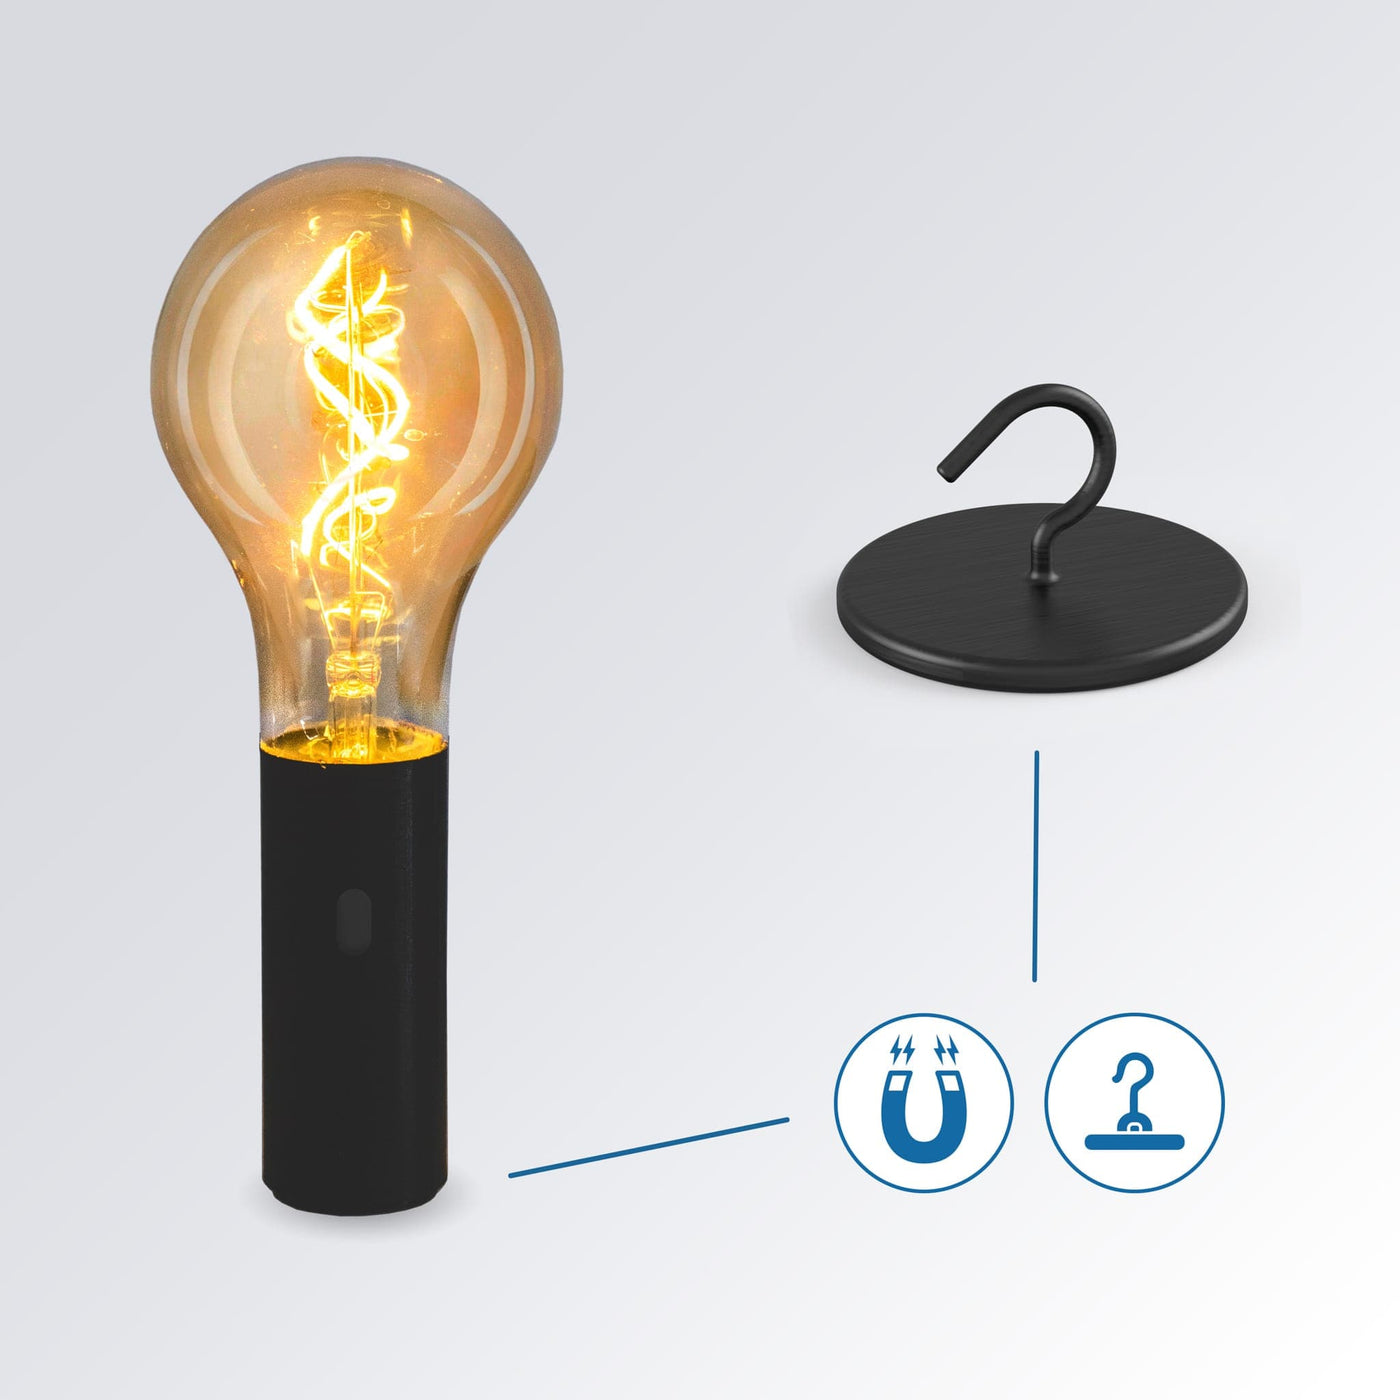 Découvrez l'ampoule Edy 100 de Newgarden : portable, base aimantée, filament LED lumineux, autonomie jusqu'à 25 heures, idéale pour tout environnement.